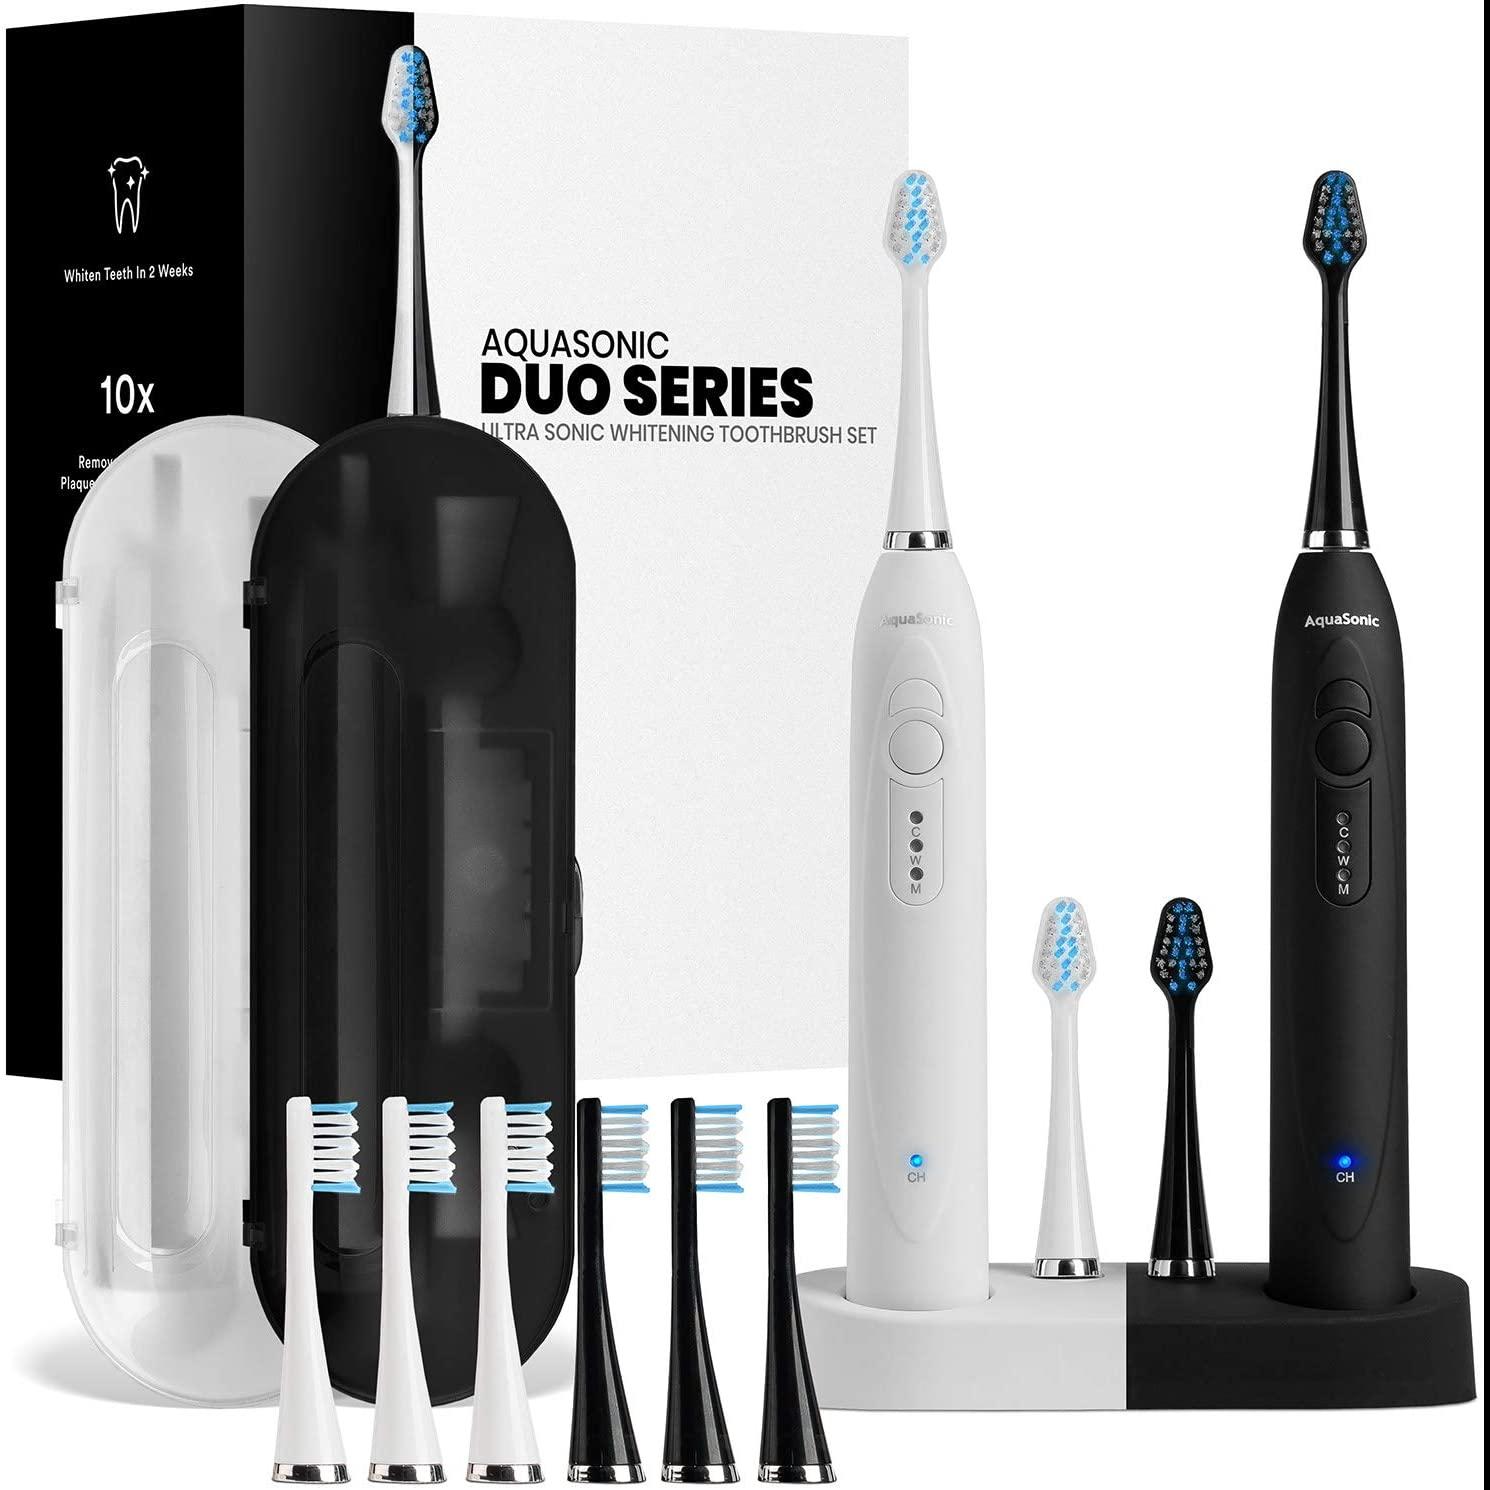 AquaSonic Duo Dual Handle Ultra Whitening Toothbrush for $33.96 Shipped